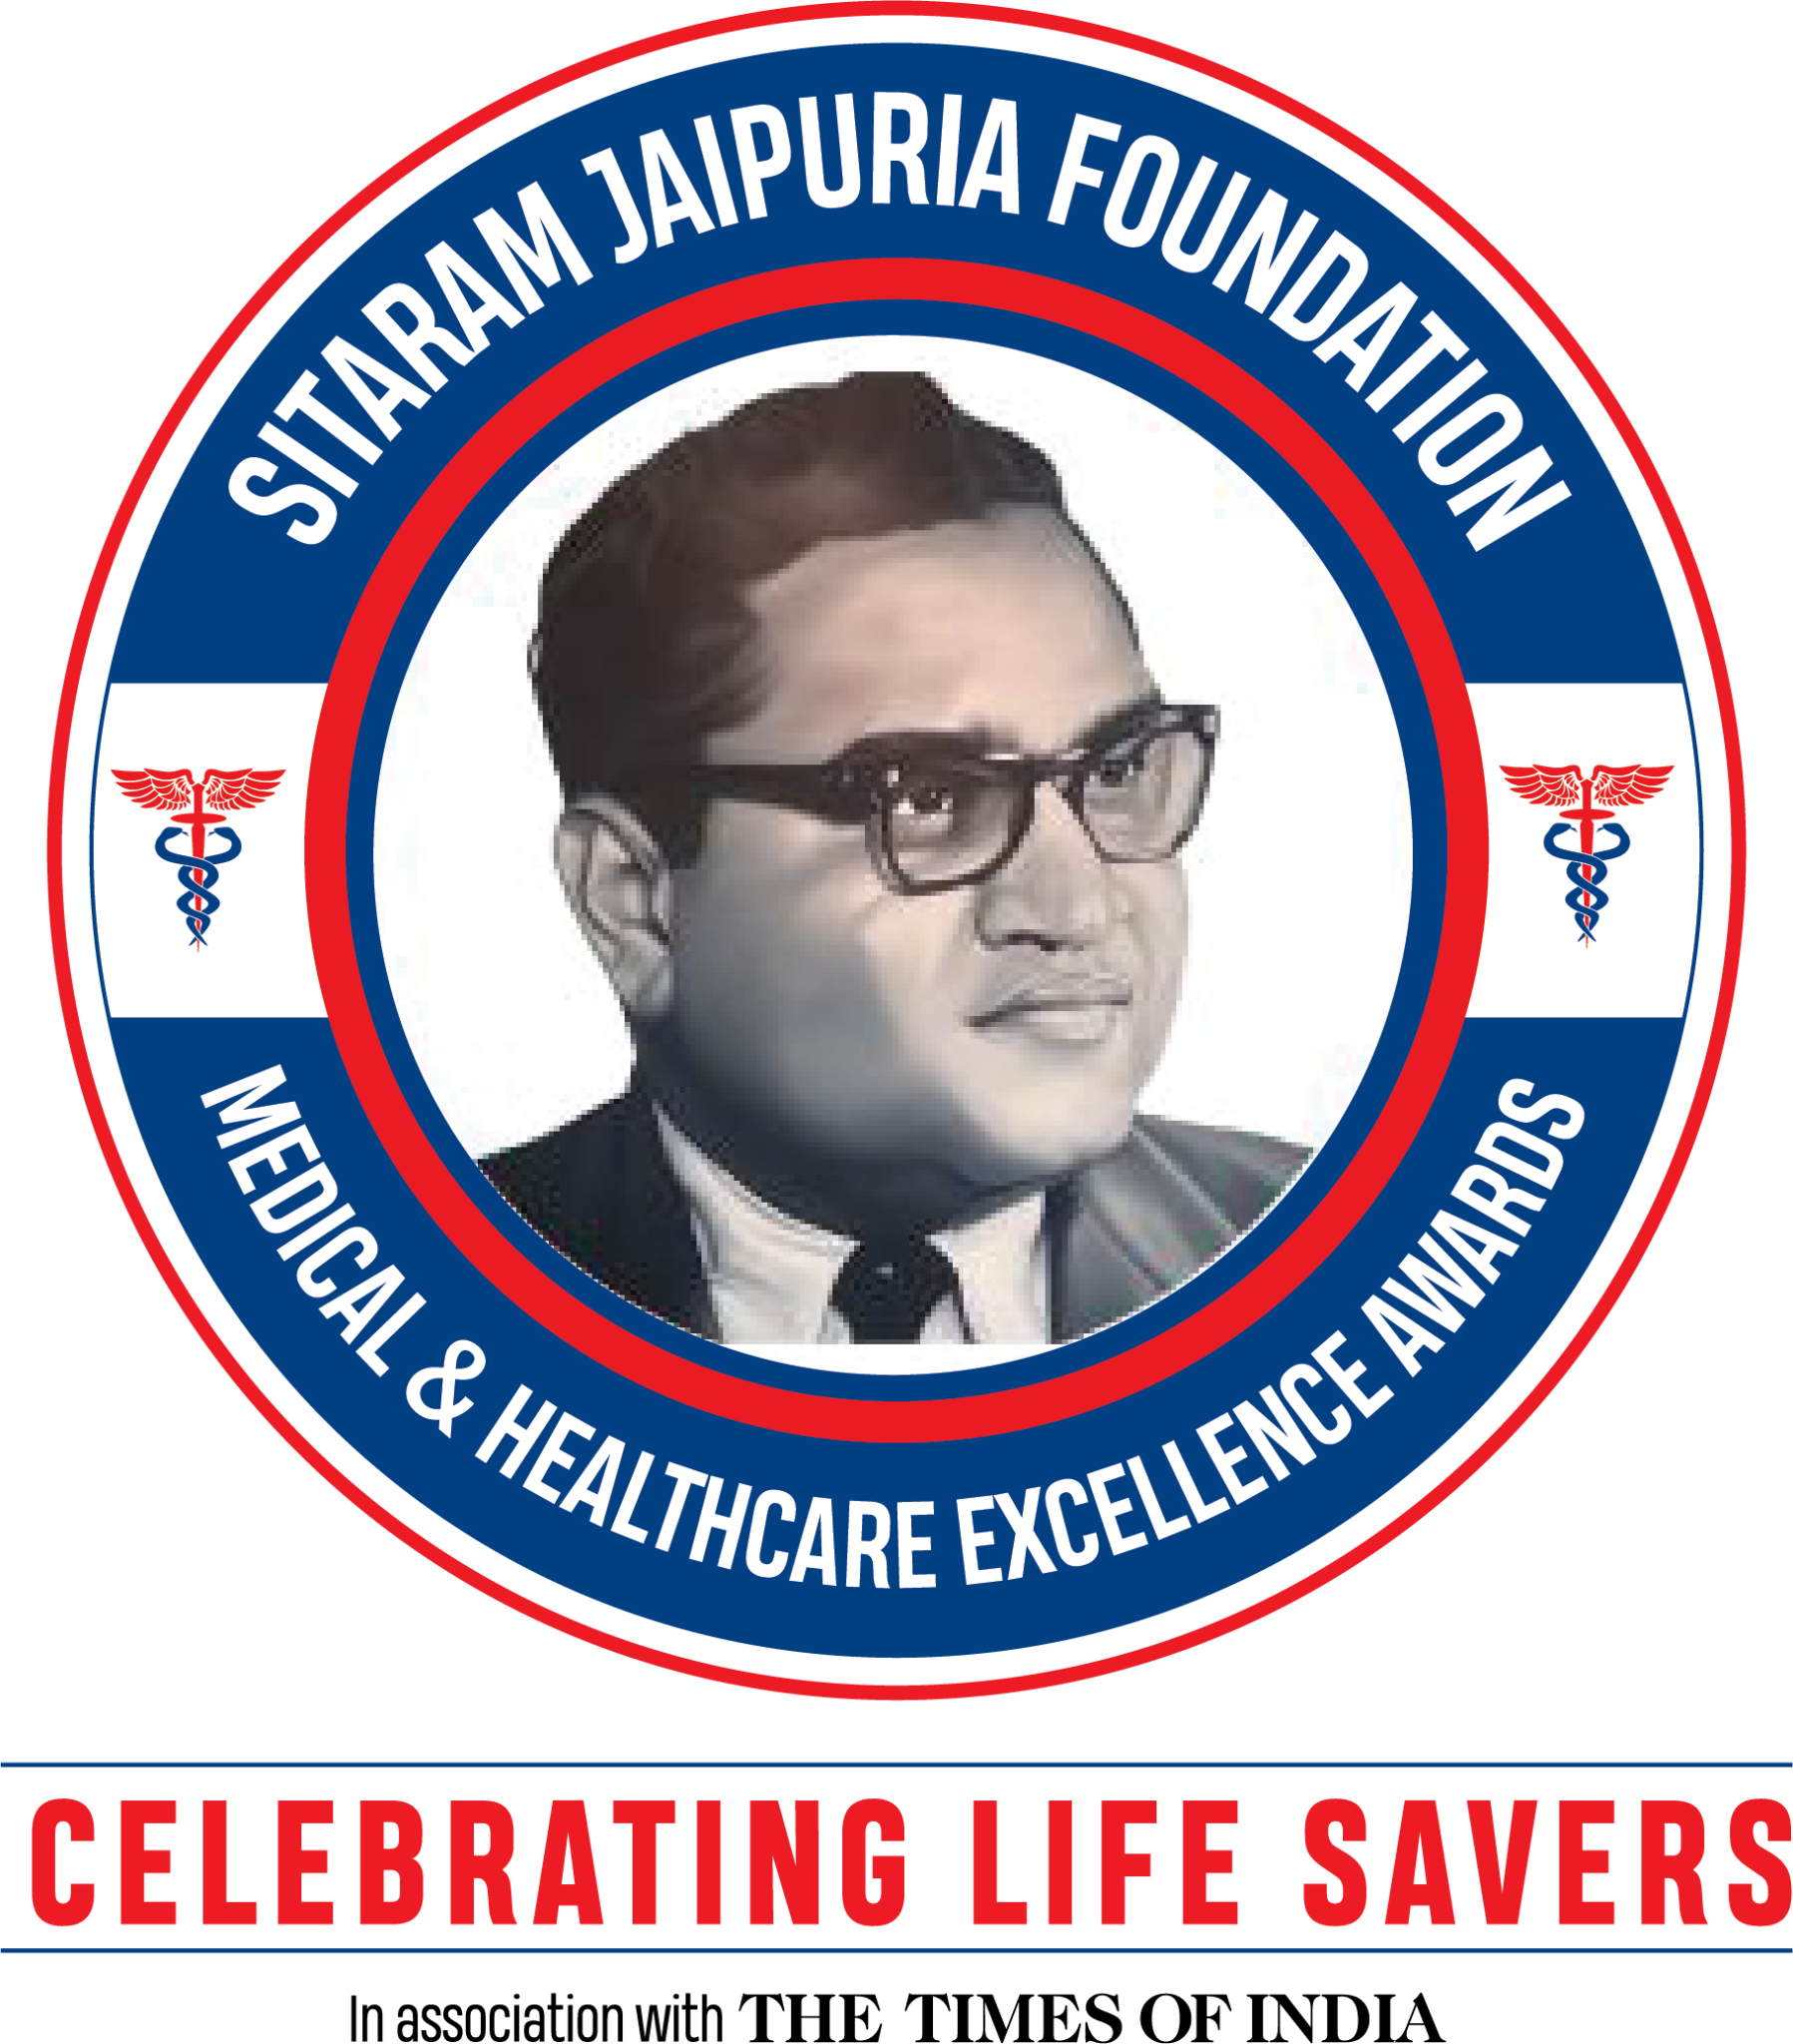 Sitaram Jaipuria Foundation